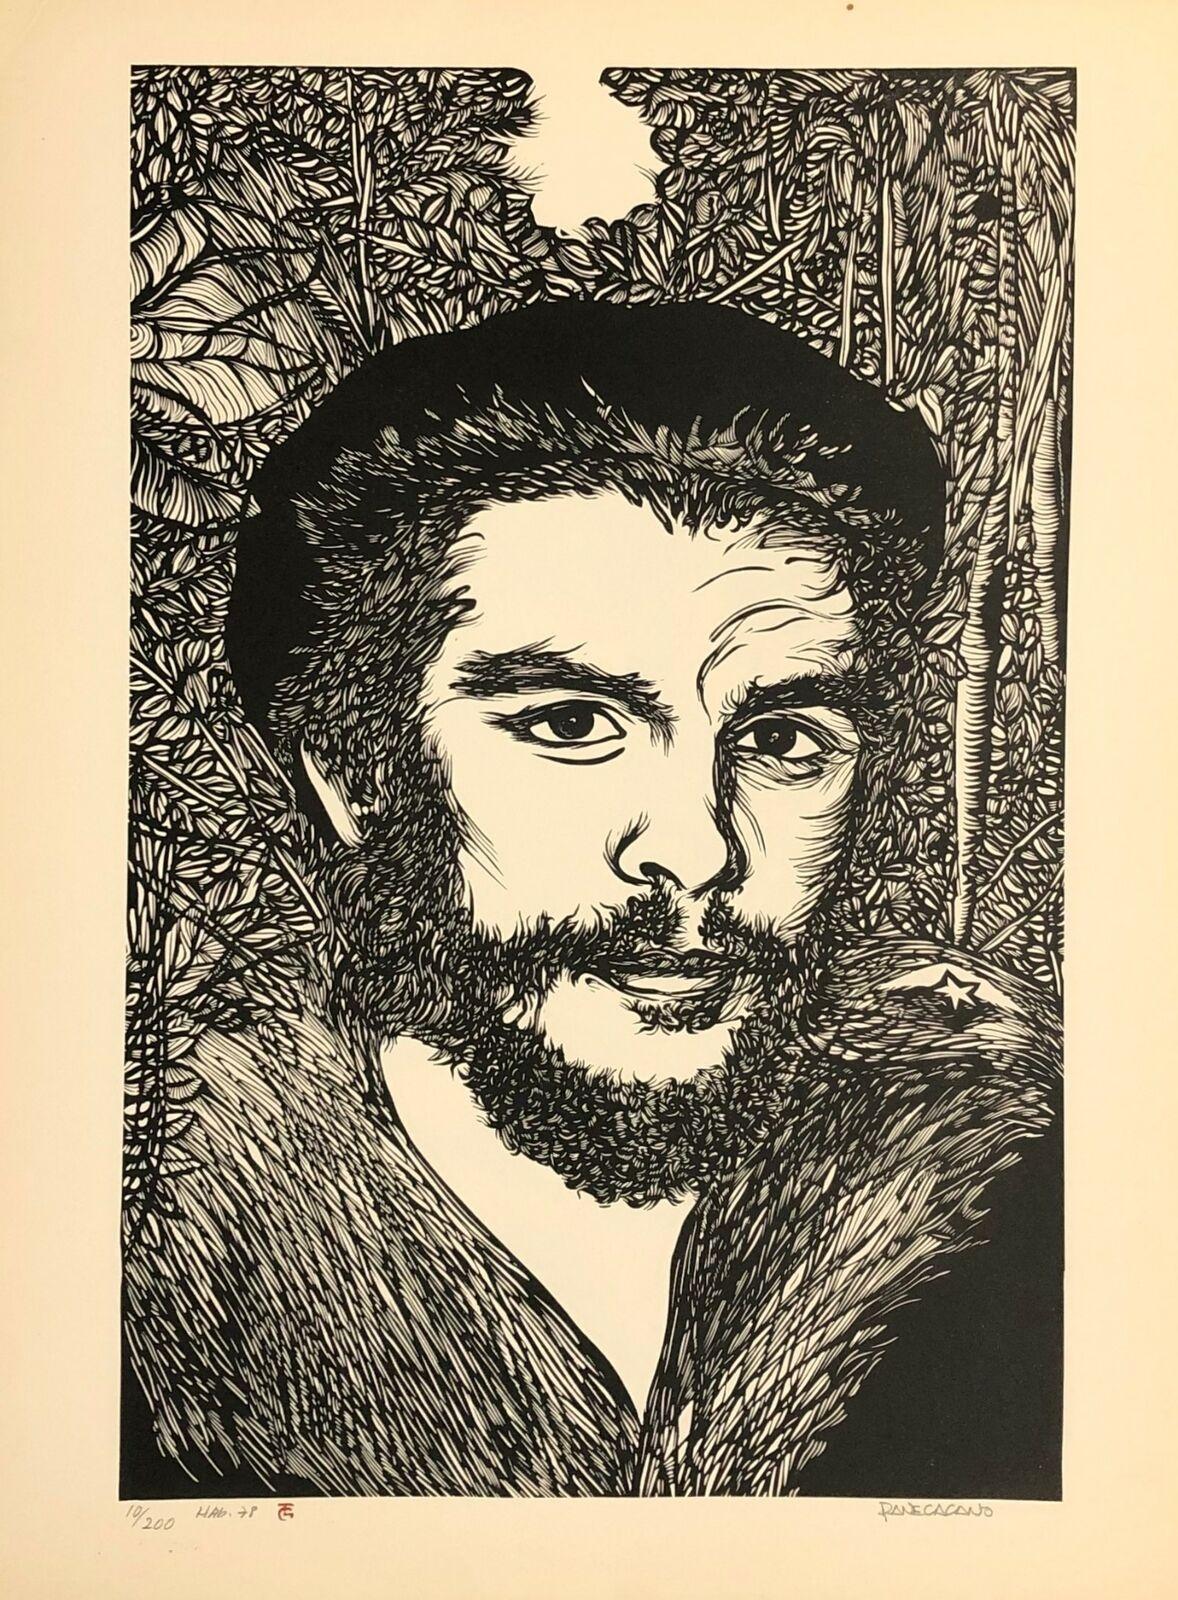 Rafael Paneca (Cuba, 1949)
Sans titre (extrait de Porfolio Grabados Cubanos)", 1978
sérigraphie sur papier Canson 320 g.
23.6 x 17.6 in. (59.8 x 44.6 cm.)
Edition de 200
ID : PAN-302
Signé par l'auteur